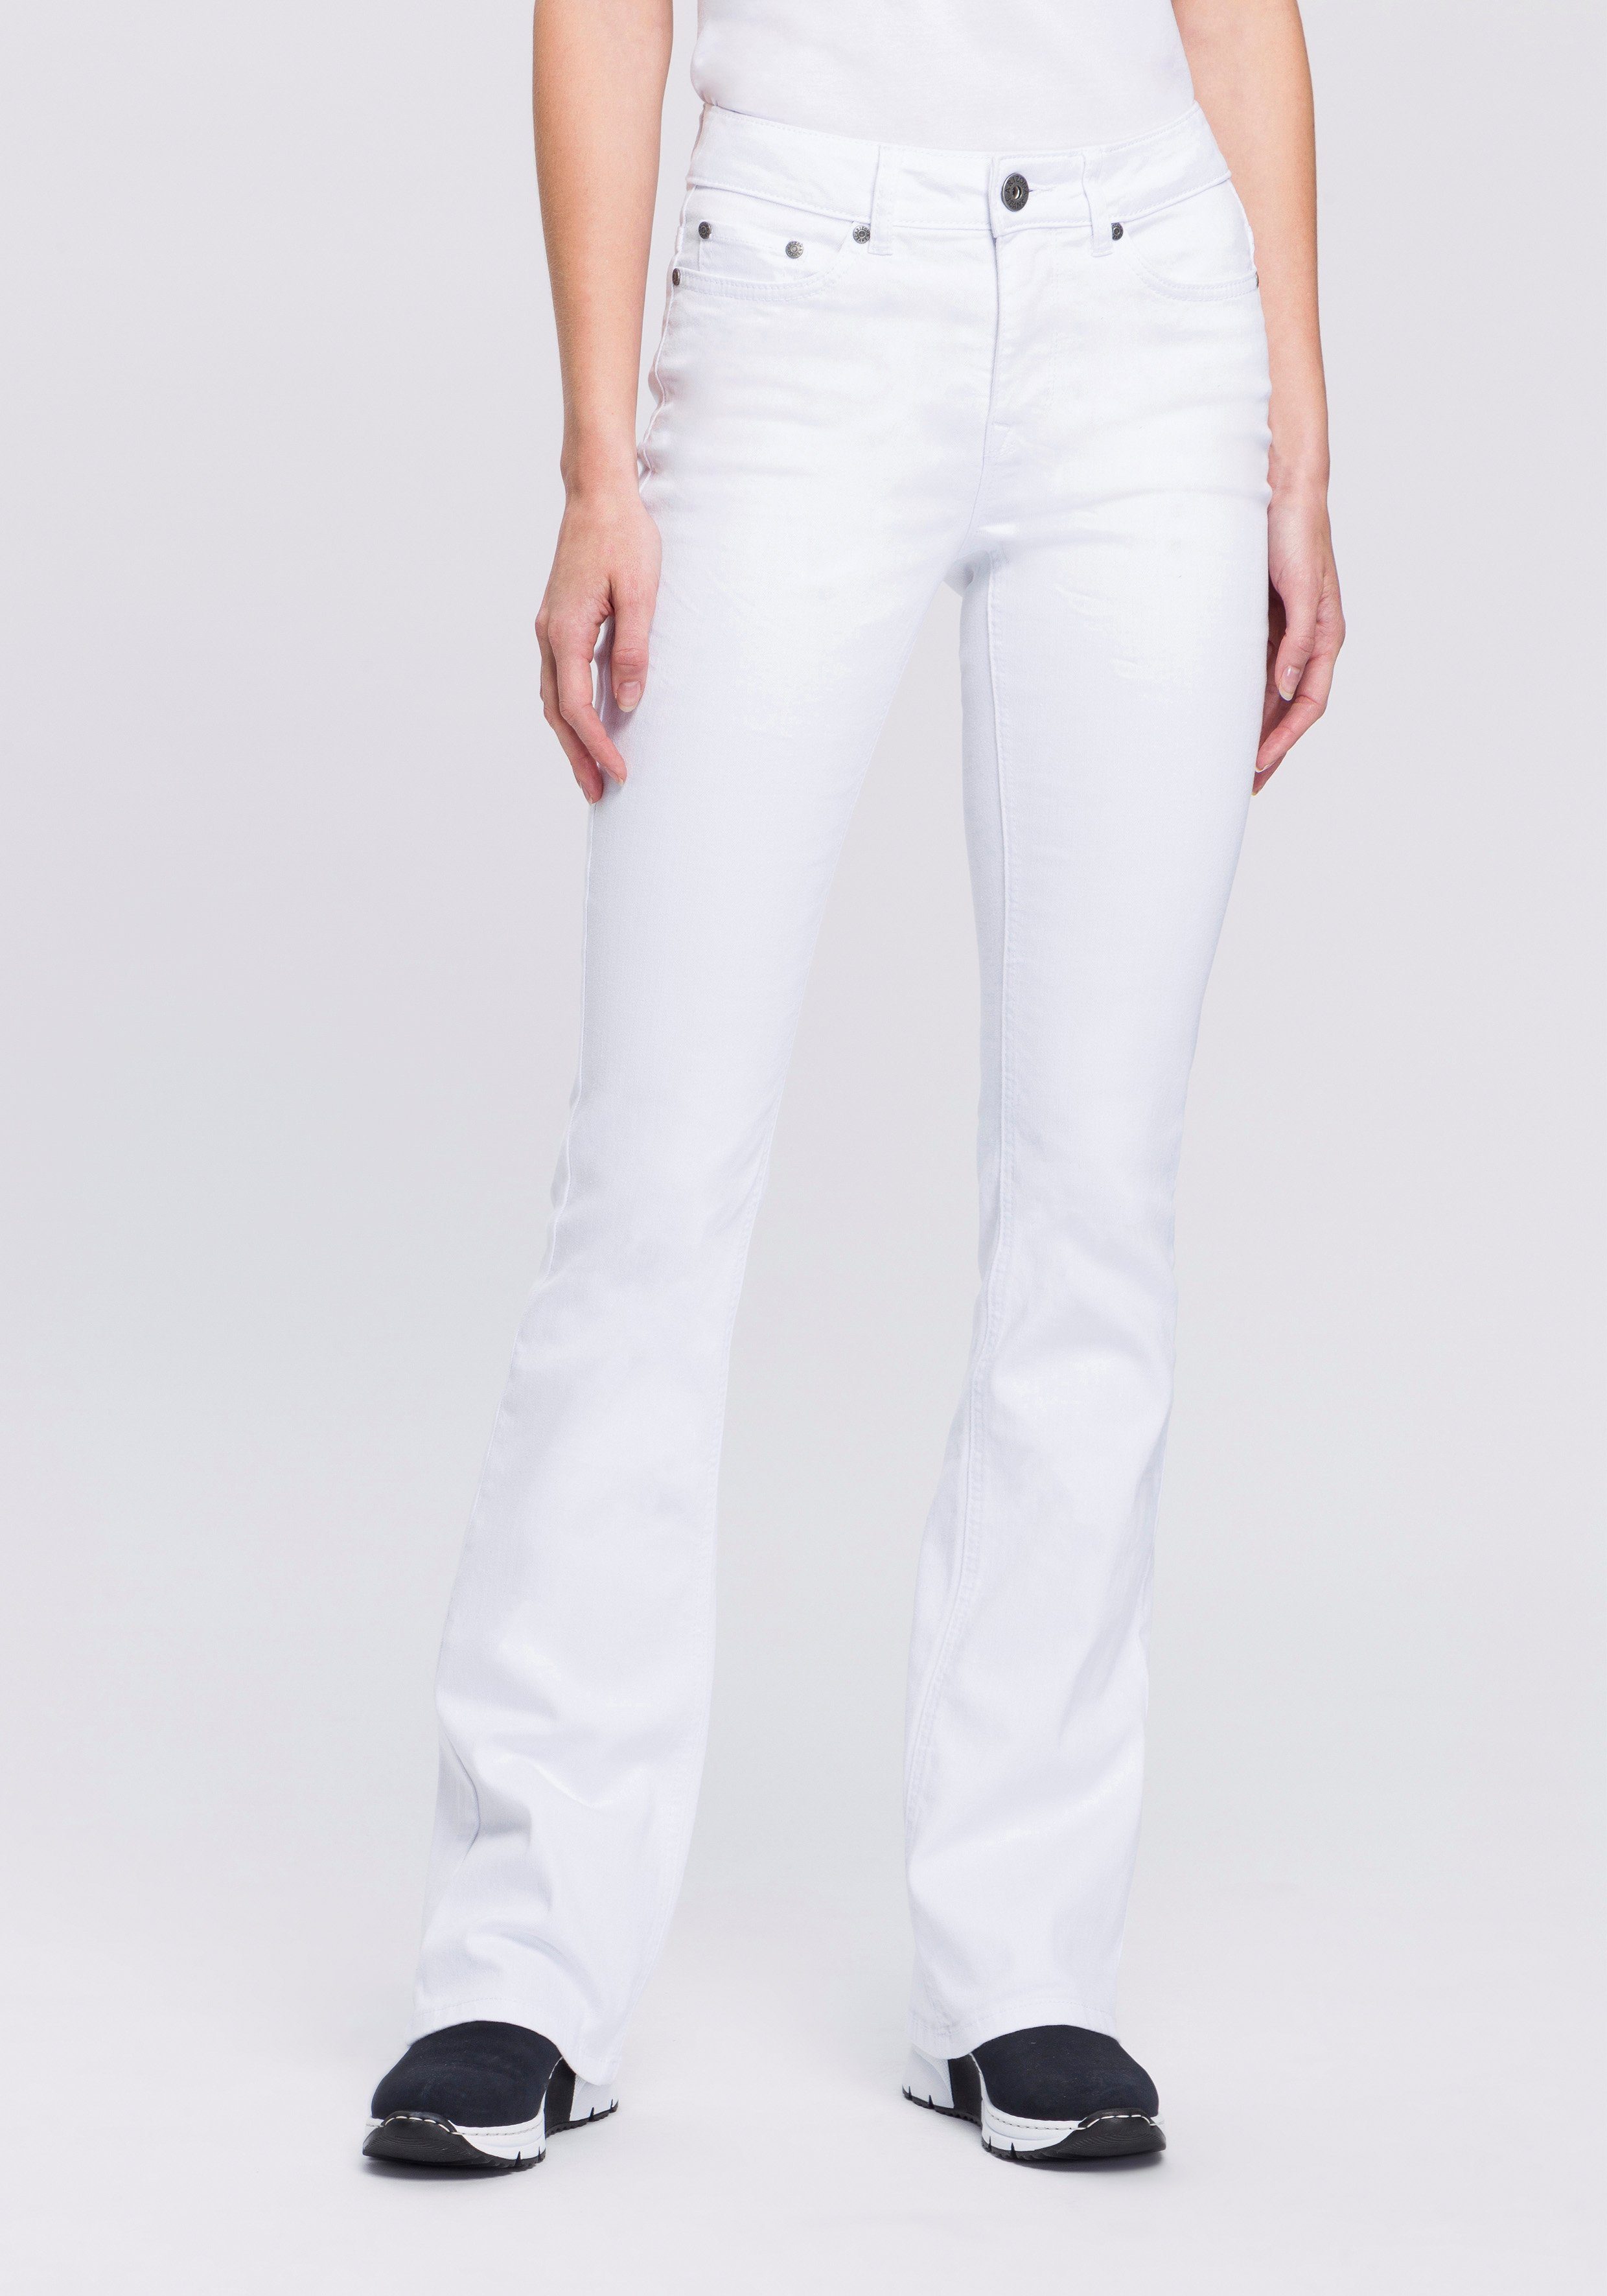 Weiße High Waist Jeans online kaufen | OTTO